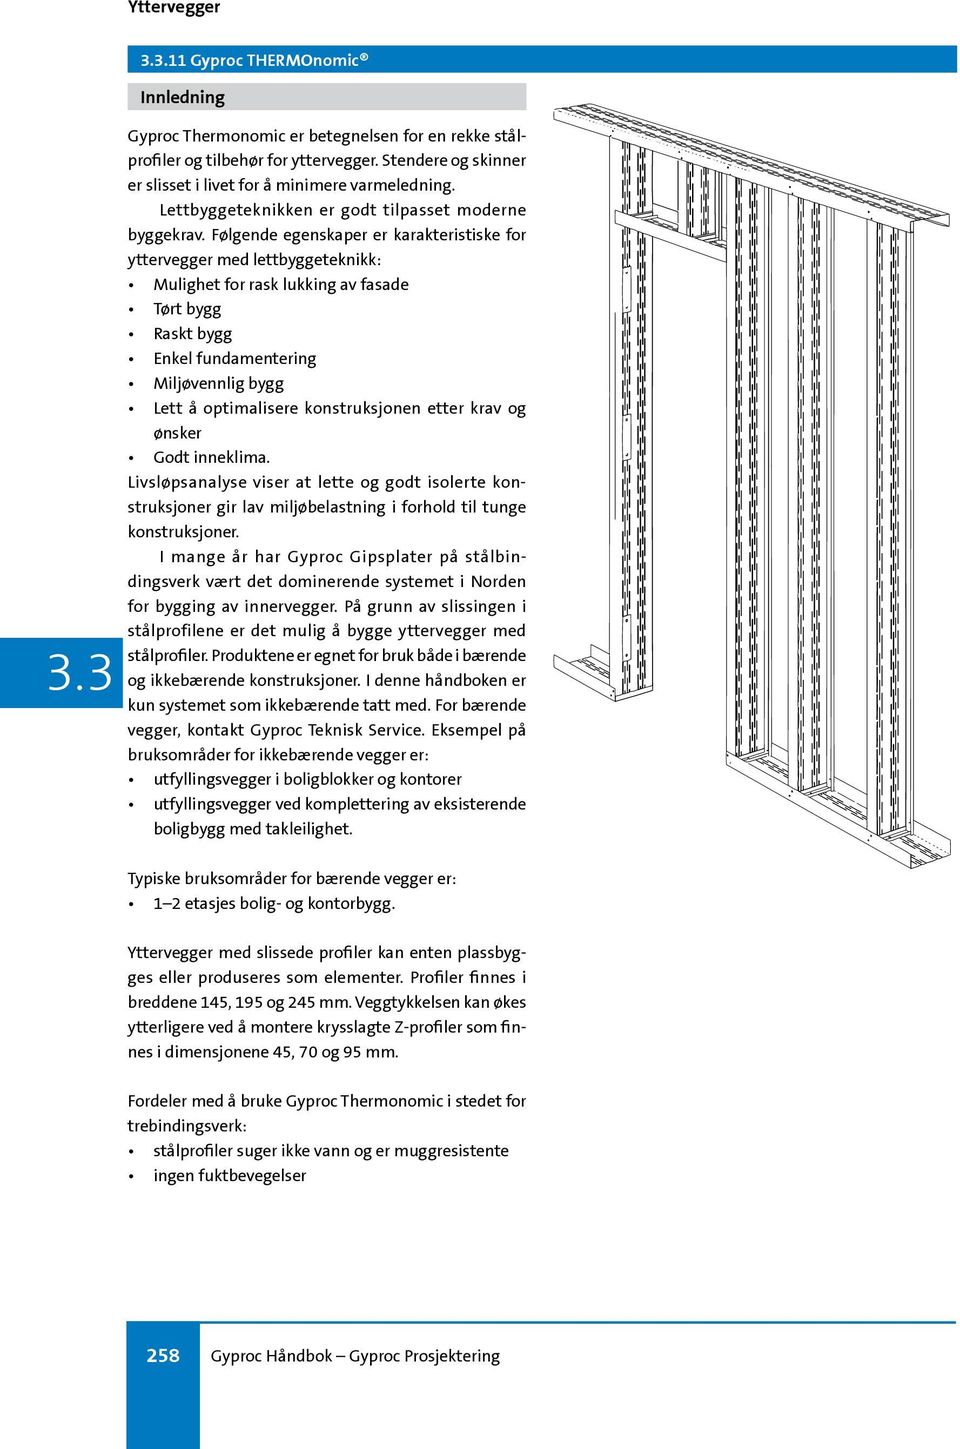 Følgende egenskaper er karakteristiske for yttervegger med lettbyggeteknikk: Mulighet for rask lukking av fasade Tørt bygg Raskt bygg Enkel fundamentering Miljøvennlig bygg Lett å optimalisere